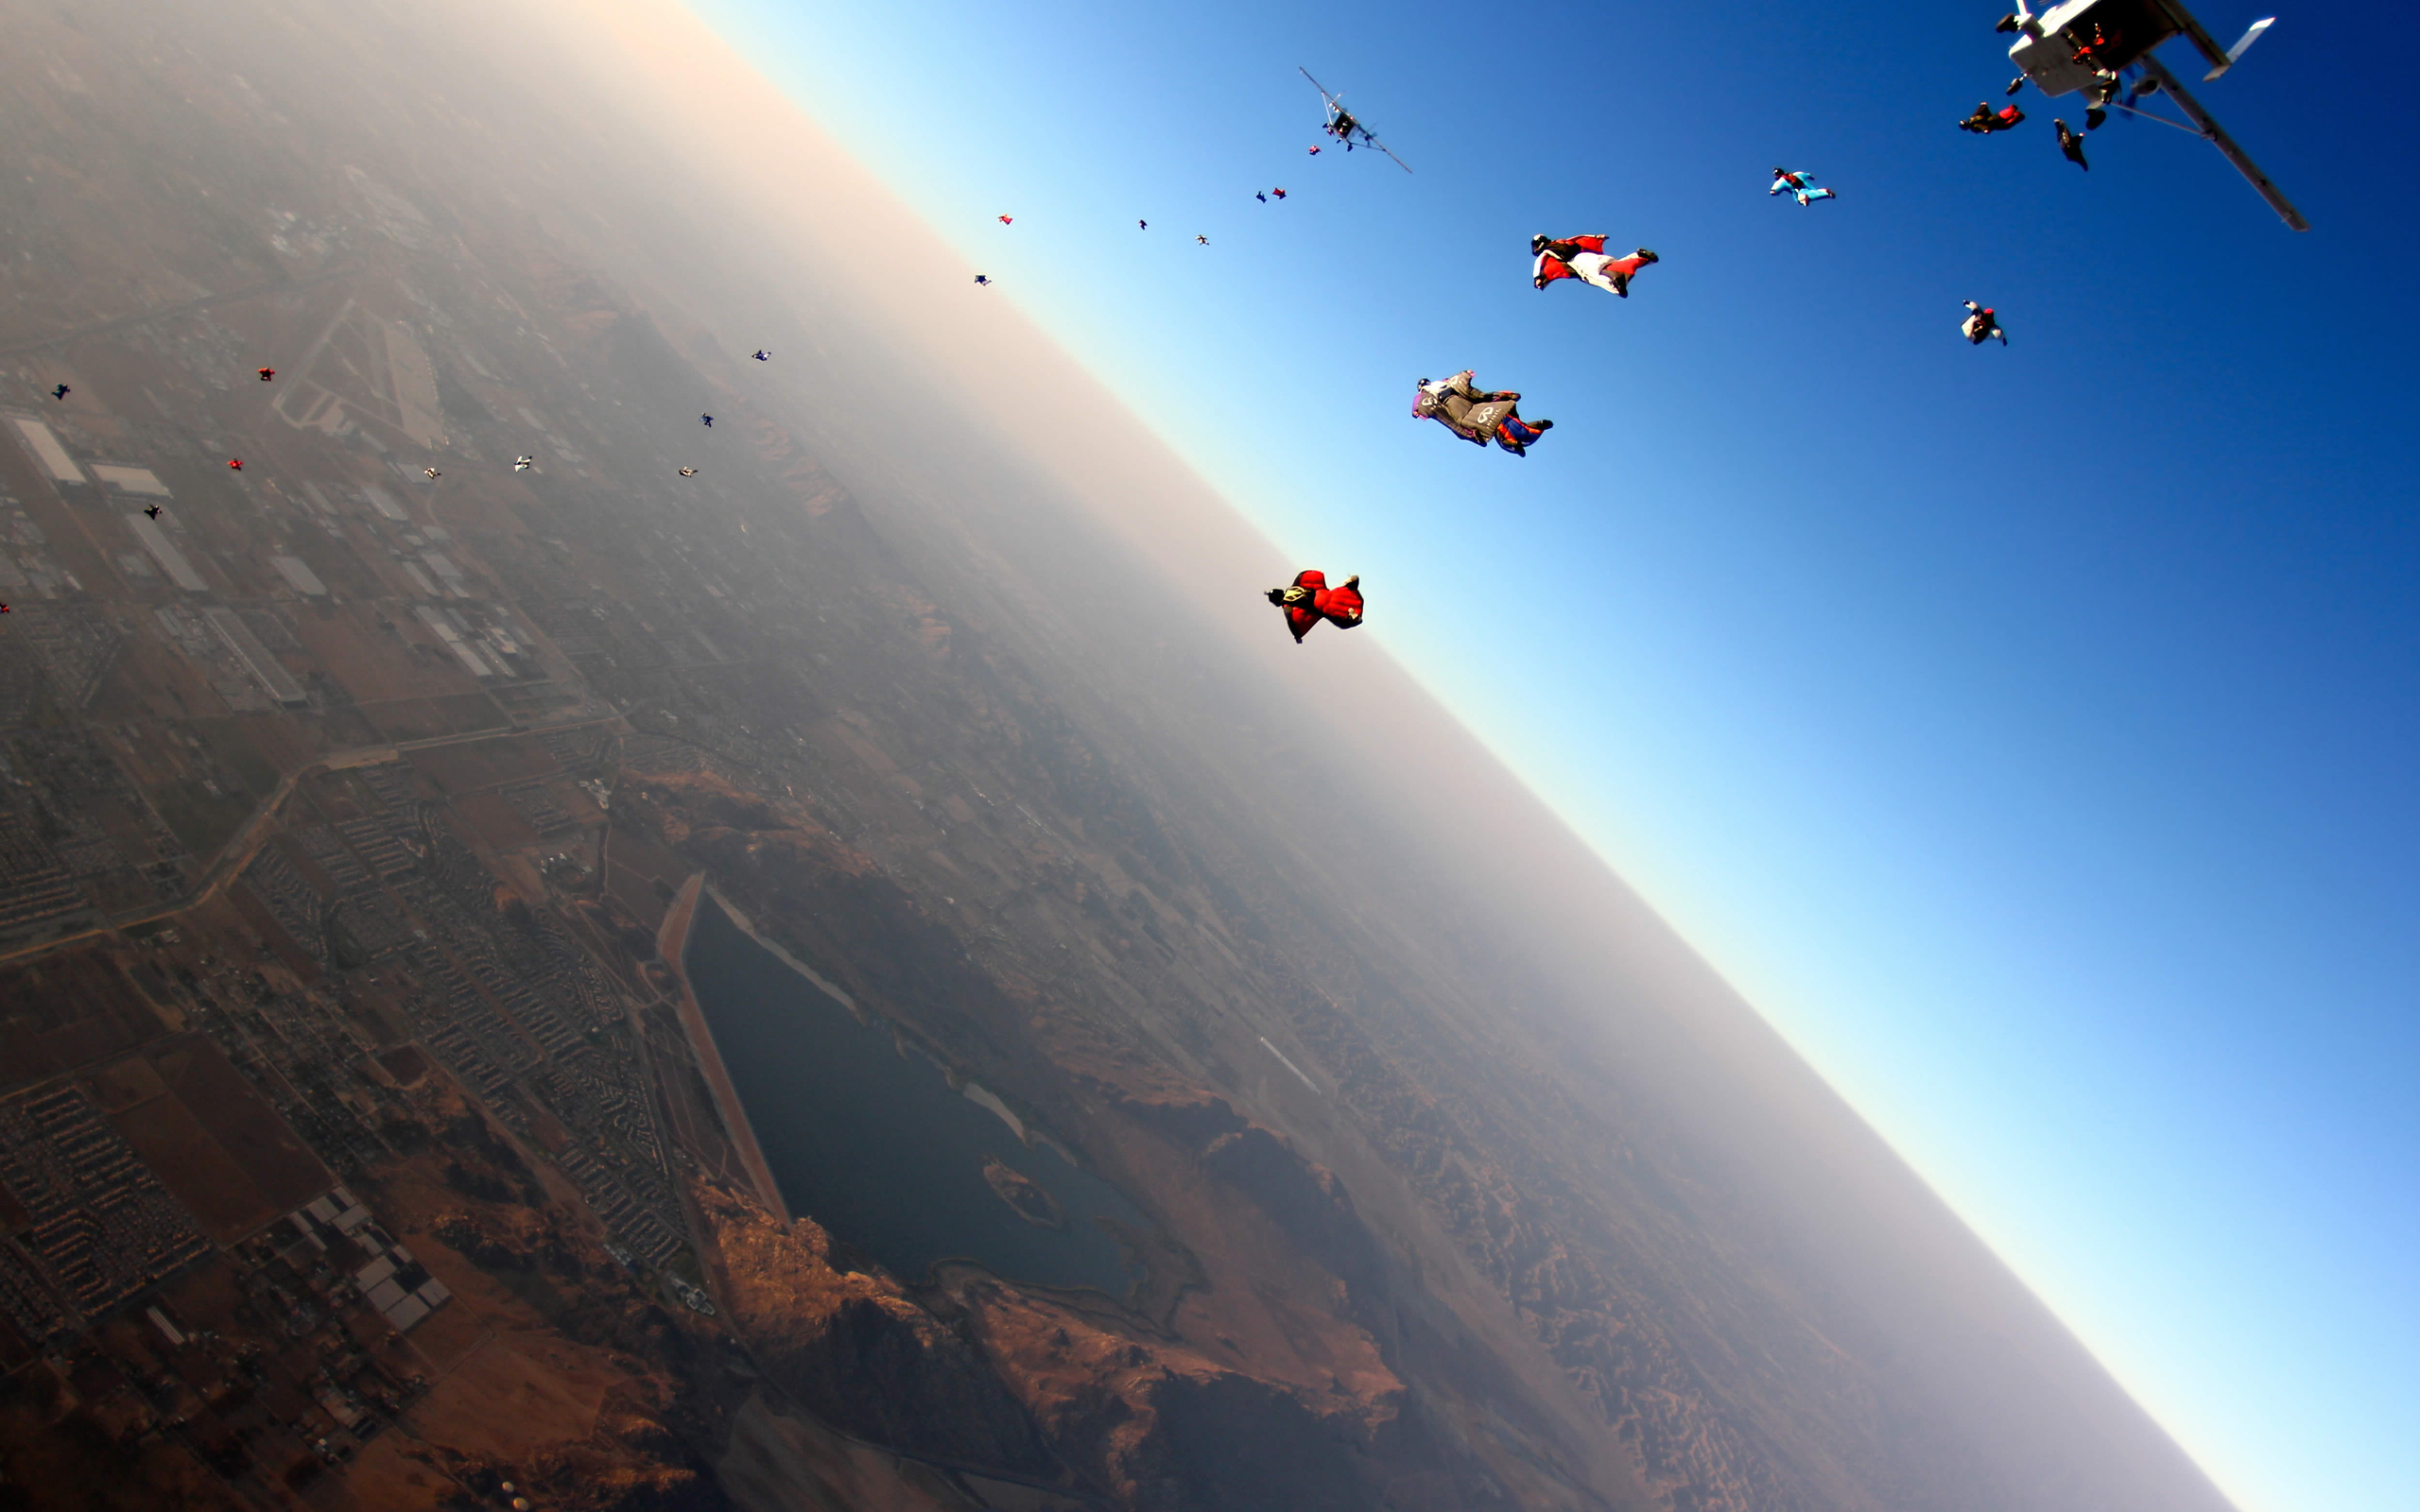 Hình nền Skydiving sẽ làm cho thiết bị của bạn thêm phần sinh động và hấp dẫn! Ảnh tuyệt đẹp này sẽ cho bạn cảm giác như mình đang trải nghiệm môn thể thao phiêu lưu đầy cảm xúc trên trời. Hãy xem ảnh để cảm nhận thêm về khung cảnh đầy mê hoặc này nhé!